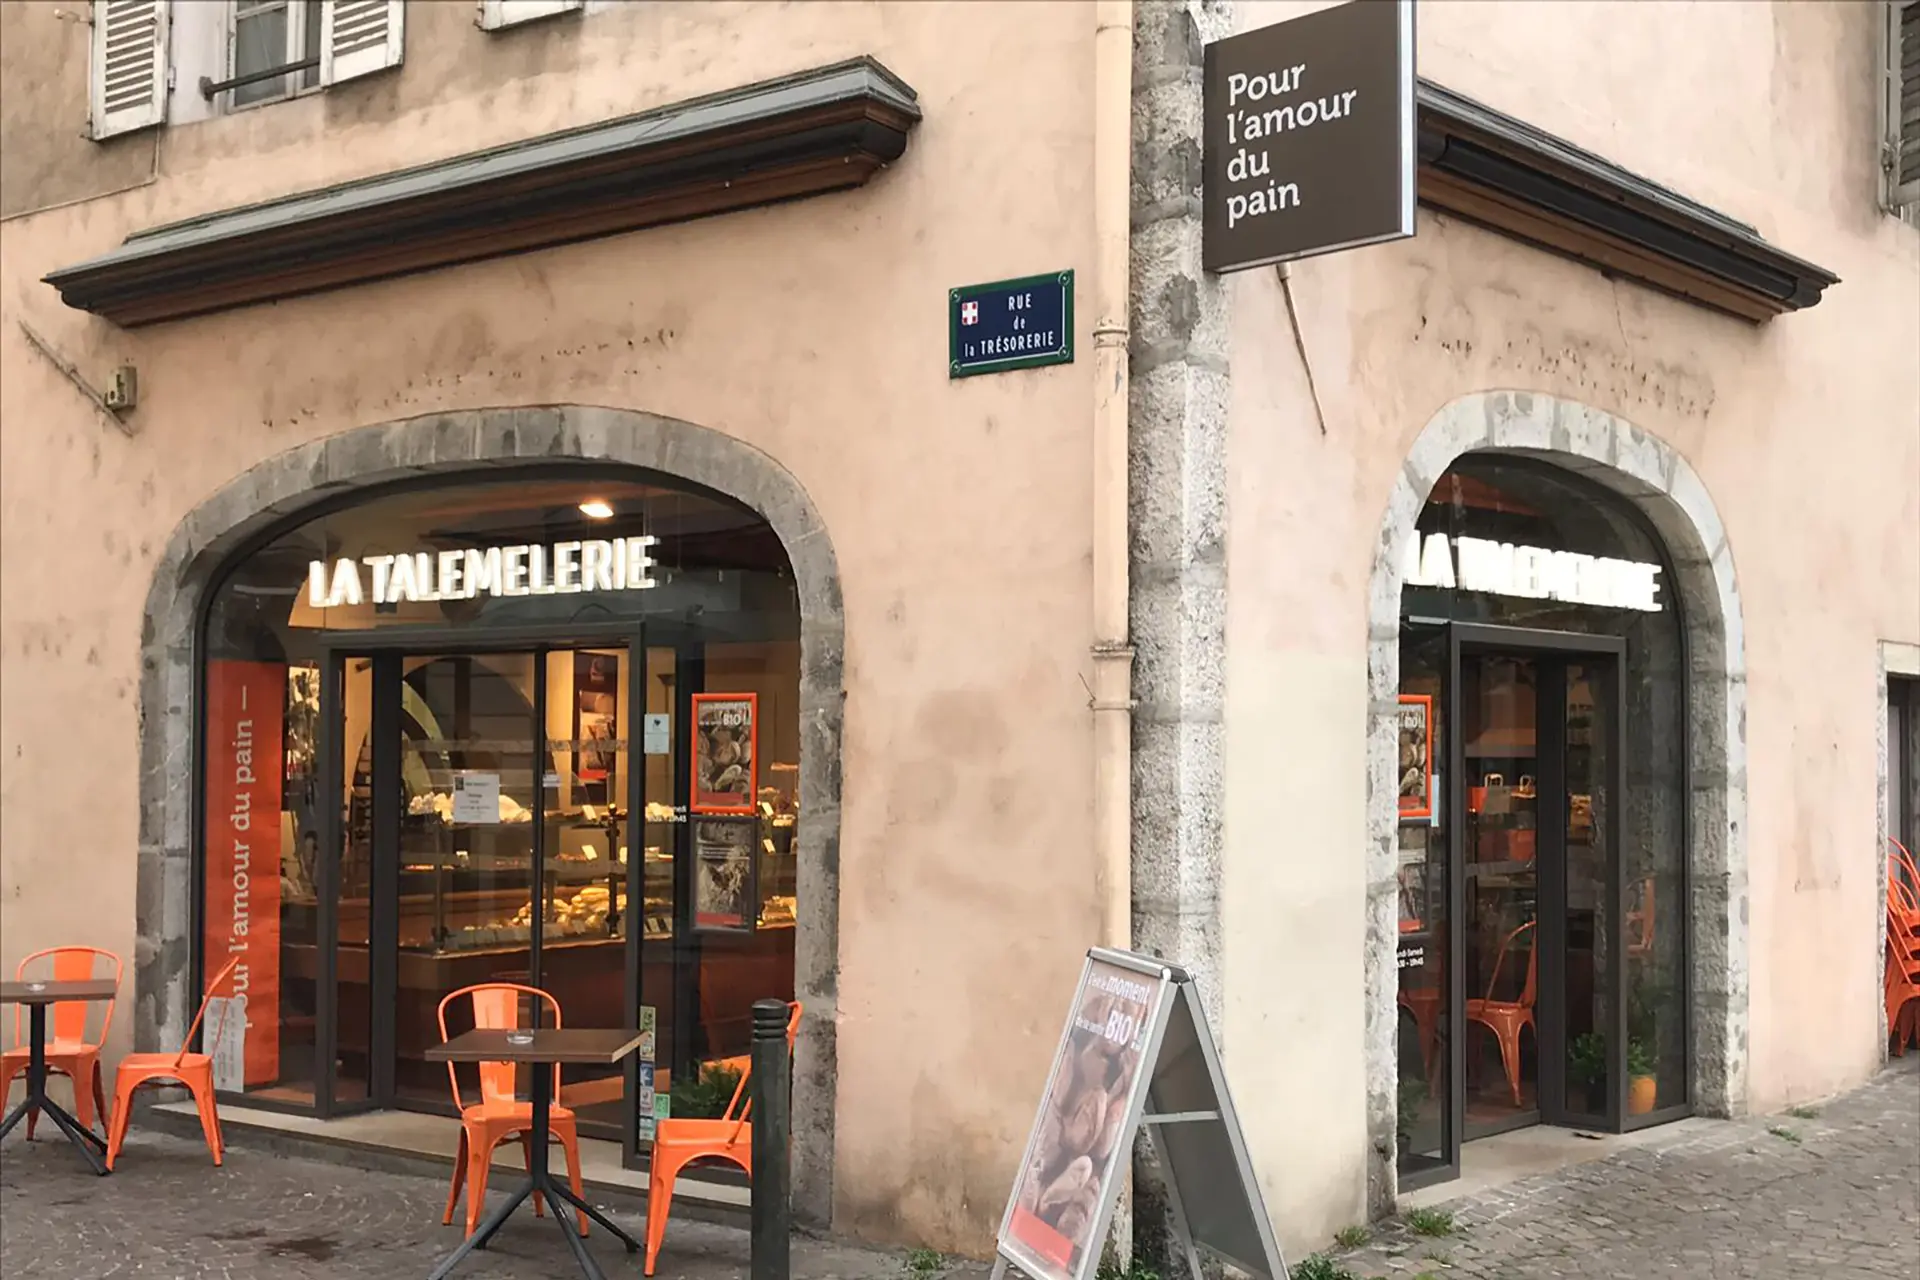 Boulangerie Pâtisserie La Talemelerie Maché à Chambéry